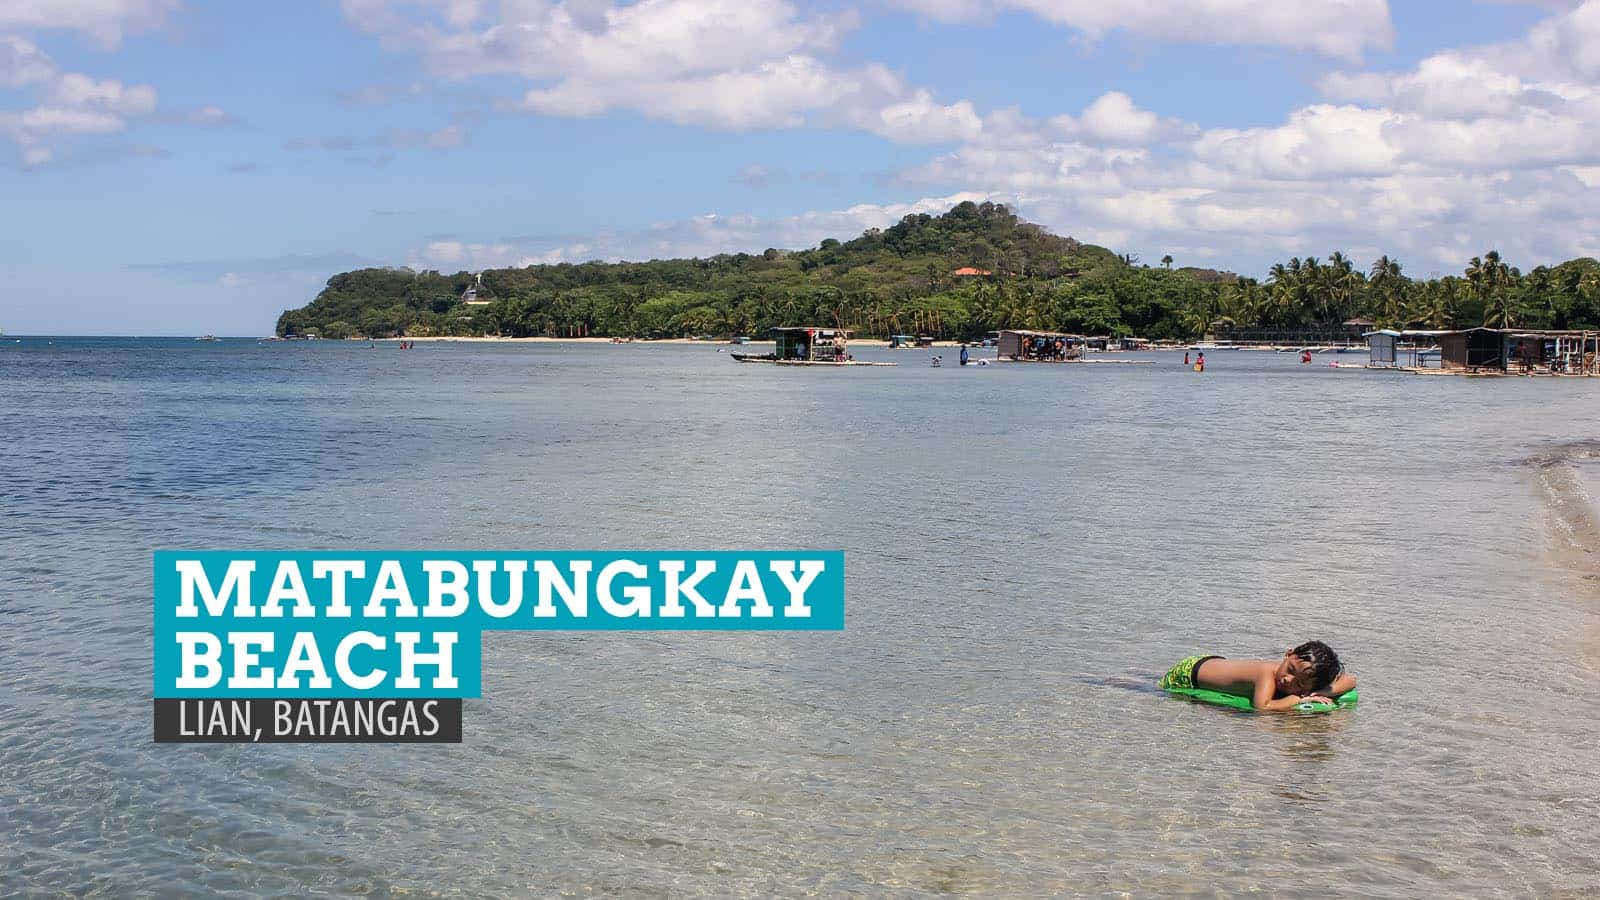 Matabungkay Beach: Littered Memories in Batangas, Philippines | The